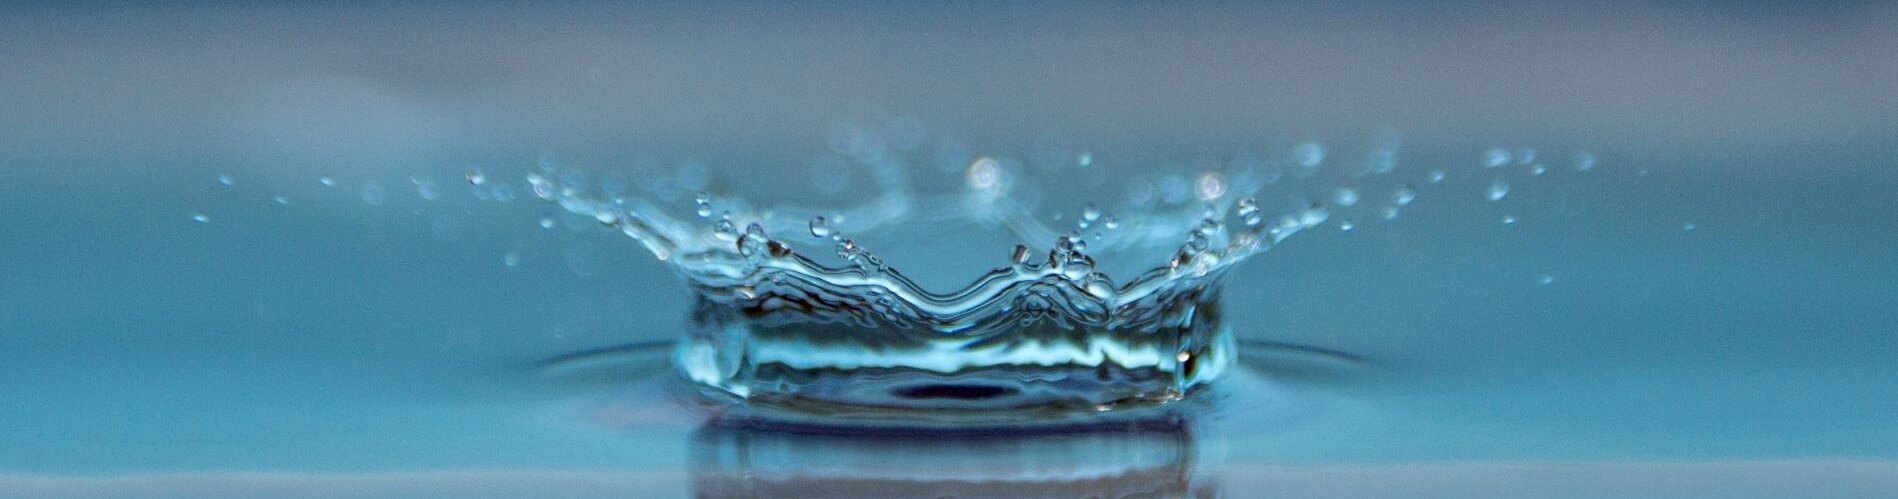 Water splash blue